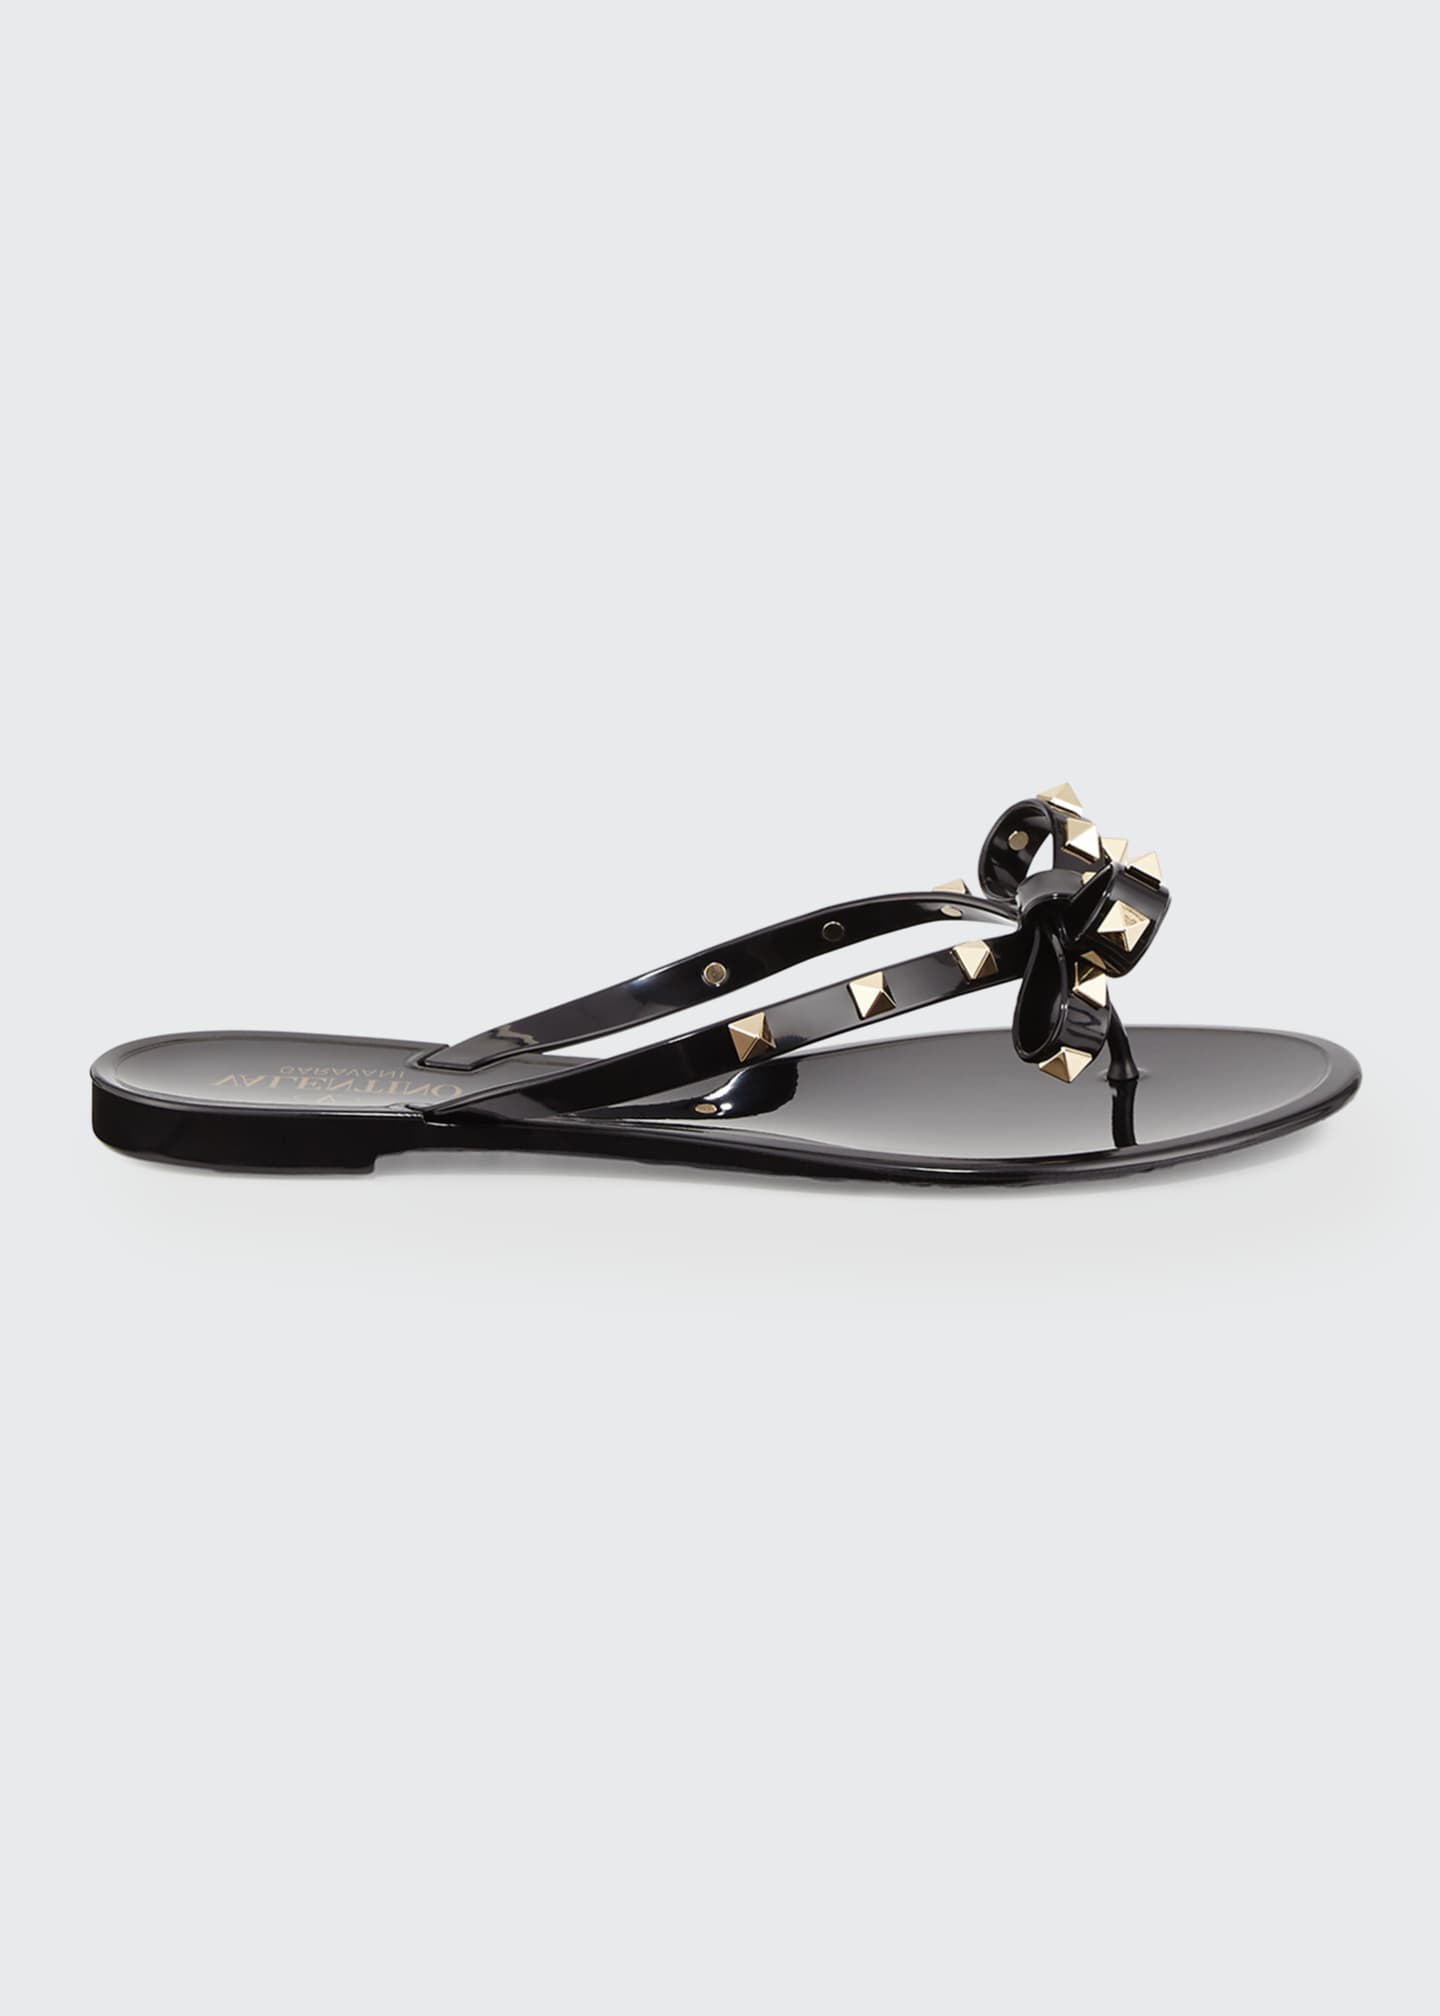 Valentino Garavani Rockstud PVC Flat Thong Sandals - Bergdorf Goodman